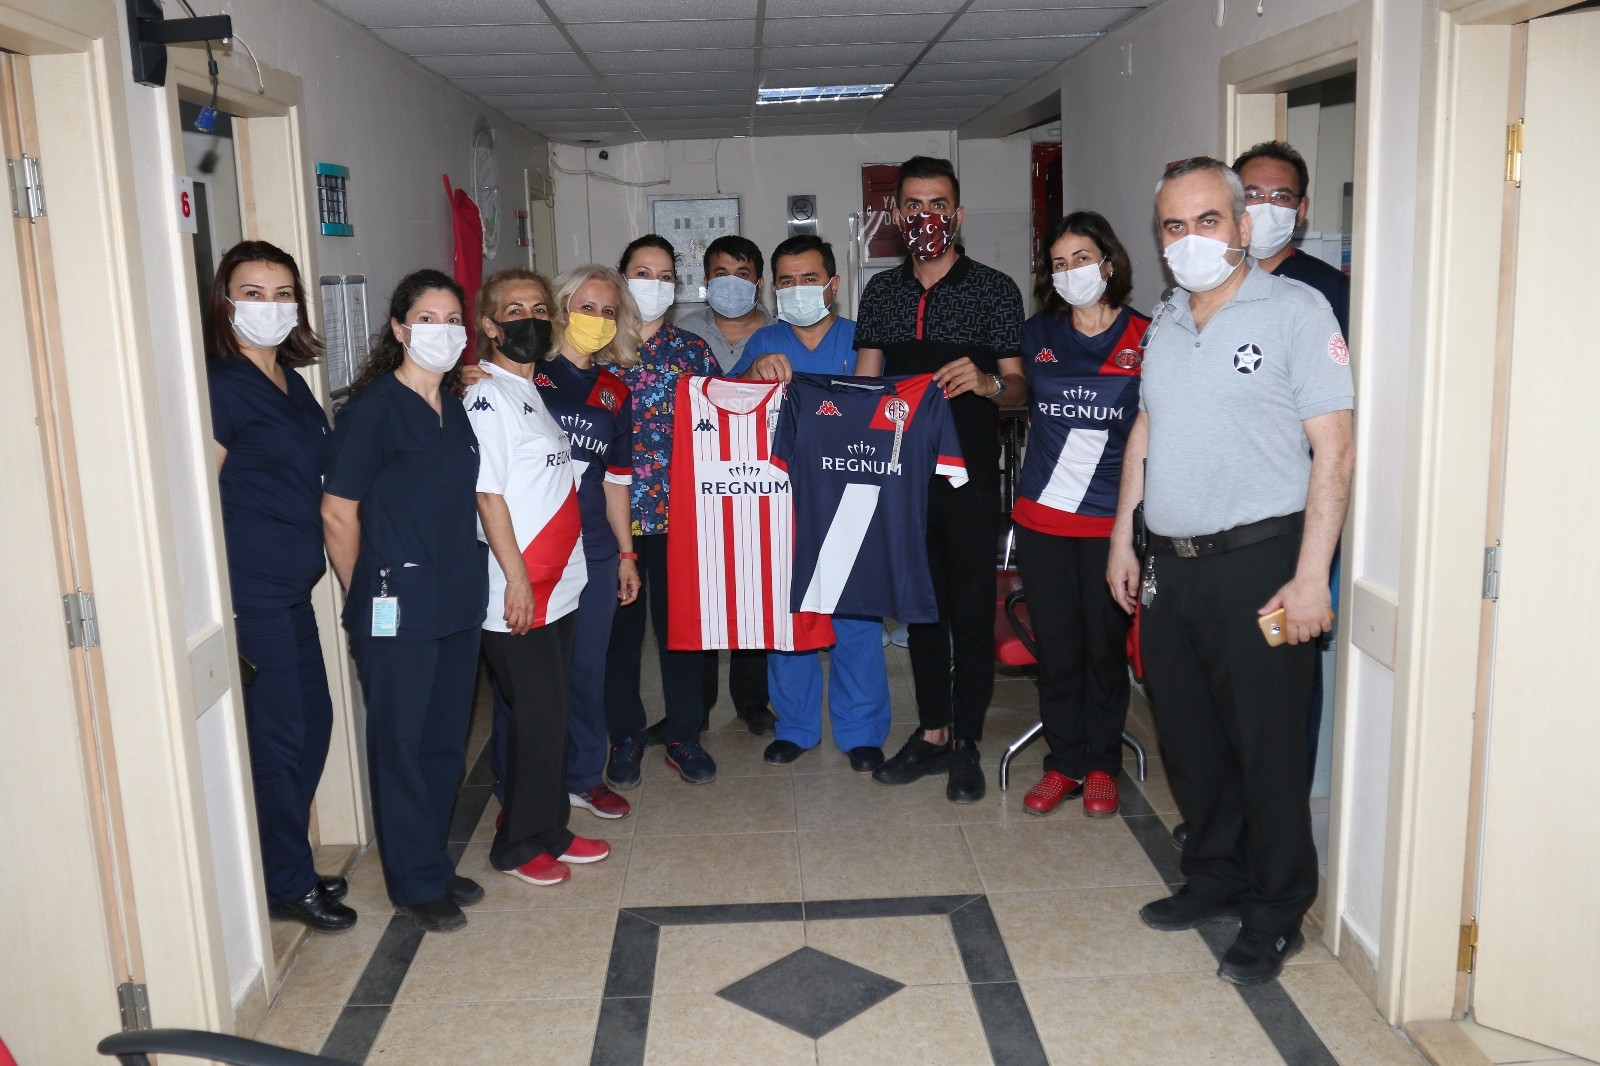 Antalyaspor yönetimi, bayramda görevlerinin başında olan emniyet ve sağlık personelleri ile çocukları unutmadı